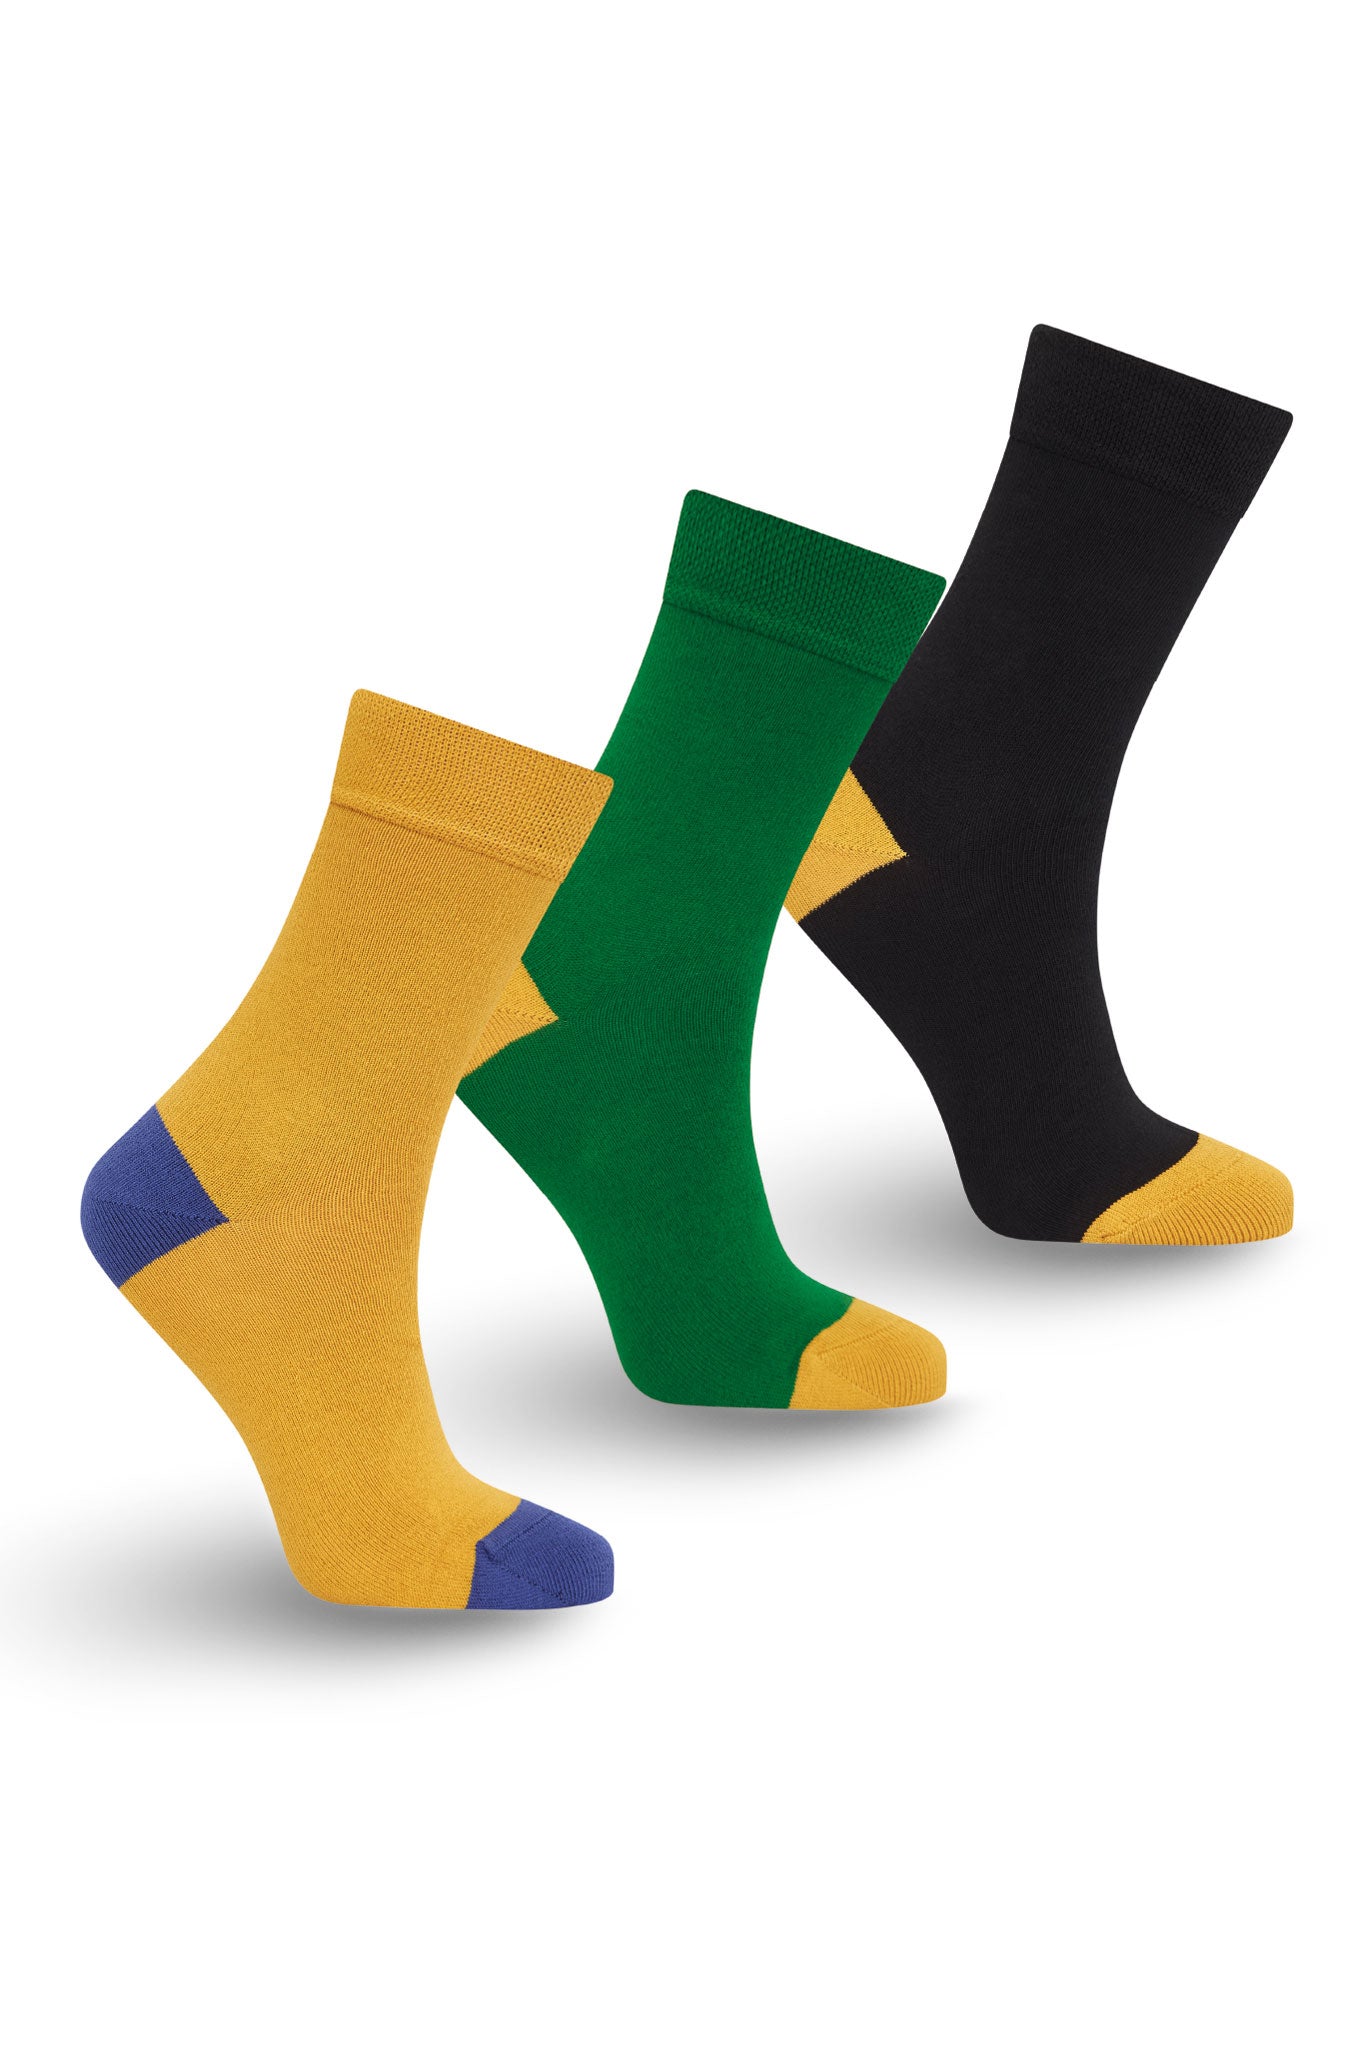 PUNCHY Box Set (x3 pairs) - GOTS Organic Cotton Socks Black/Green/Gold, EUR 44-46